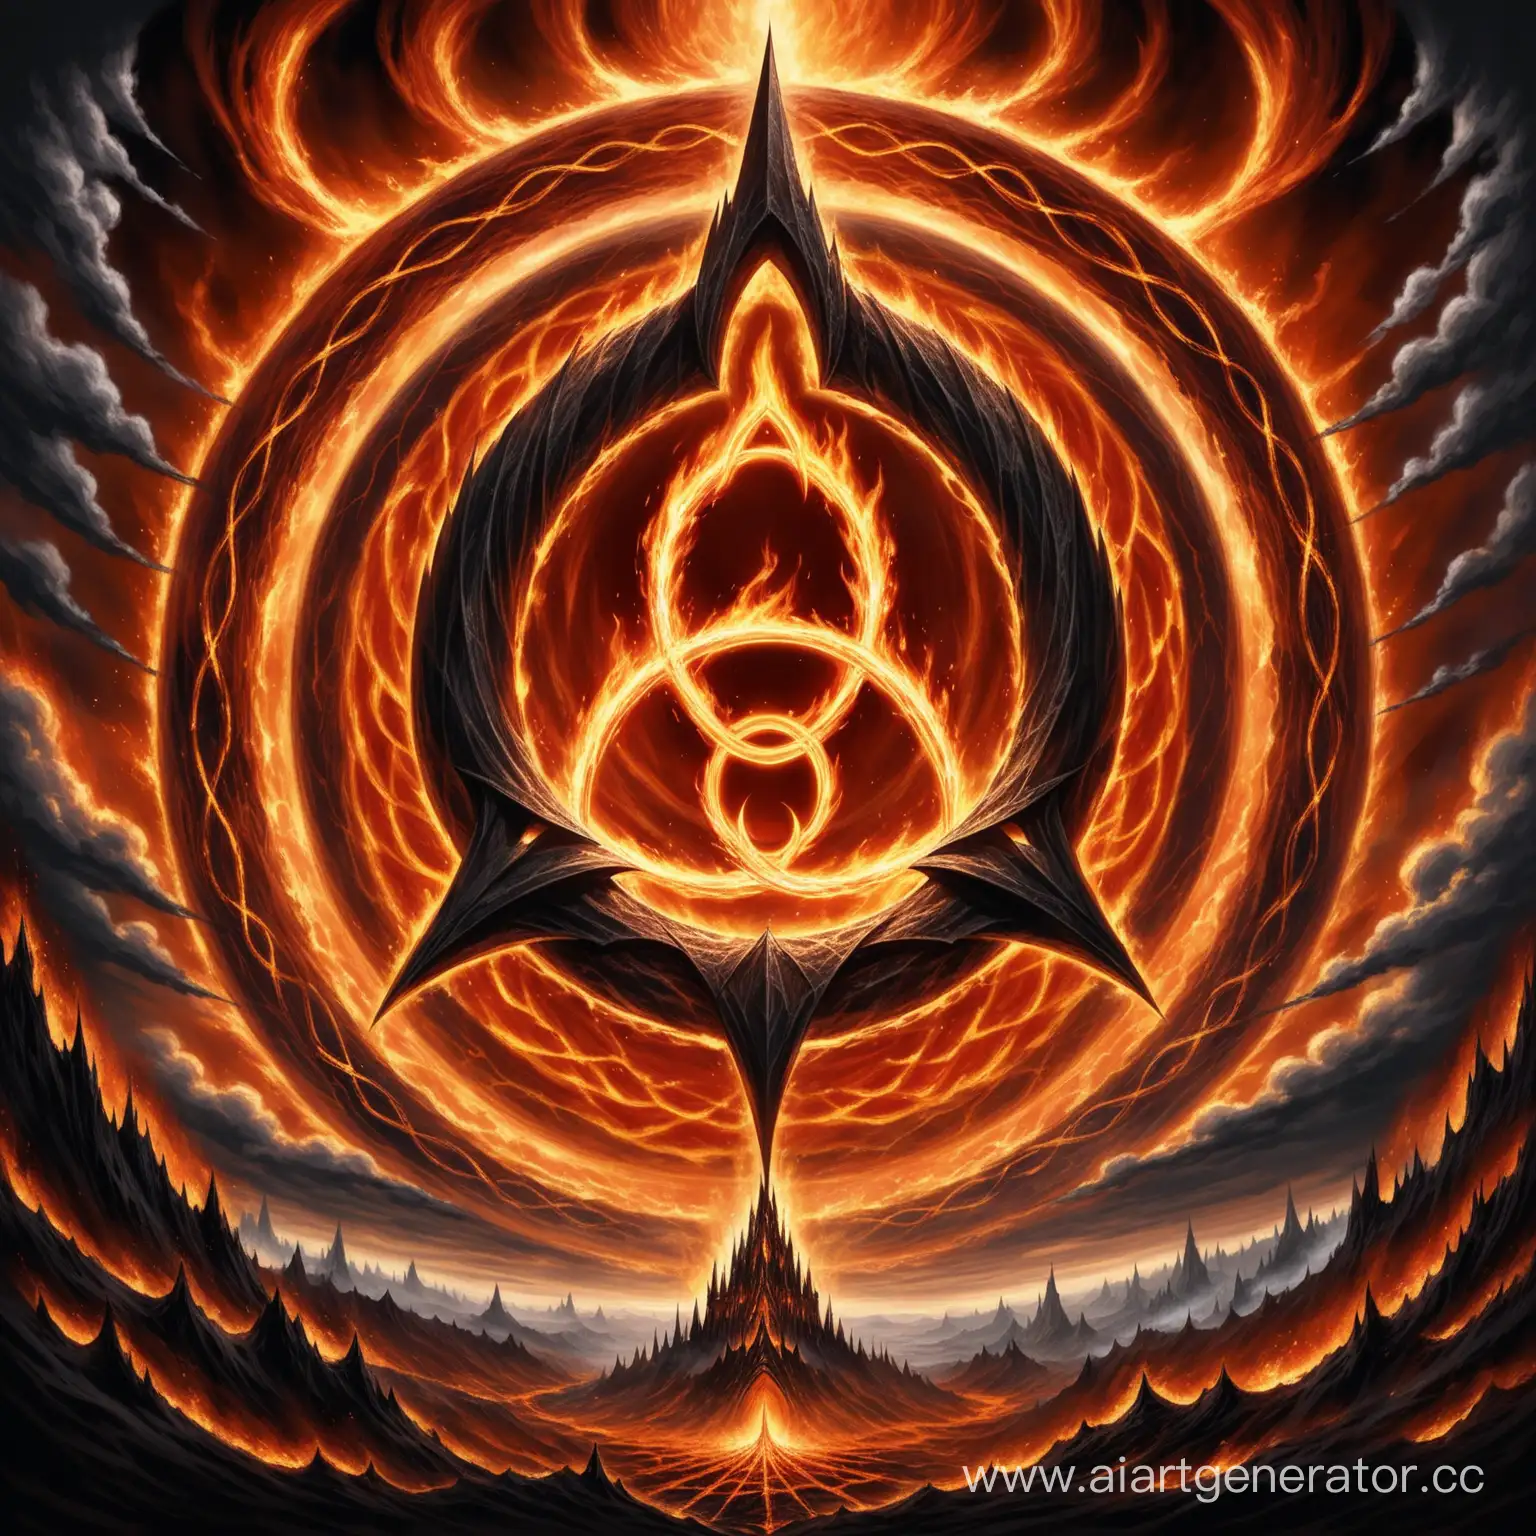 логотип: Триединство в Огне, где изображено три пламенных кольца, объединенных в одно, вокруг которых витают тени или облака тьмы, создавая атмосферу Мордора.